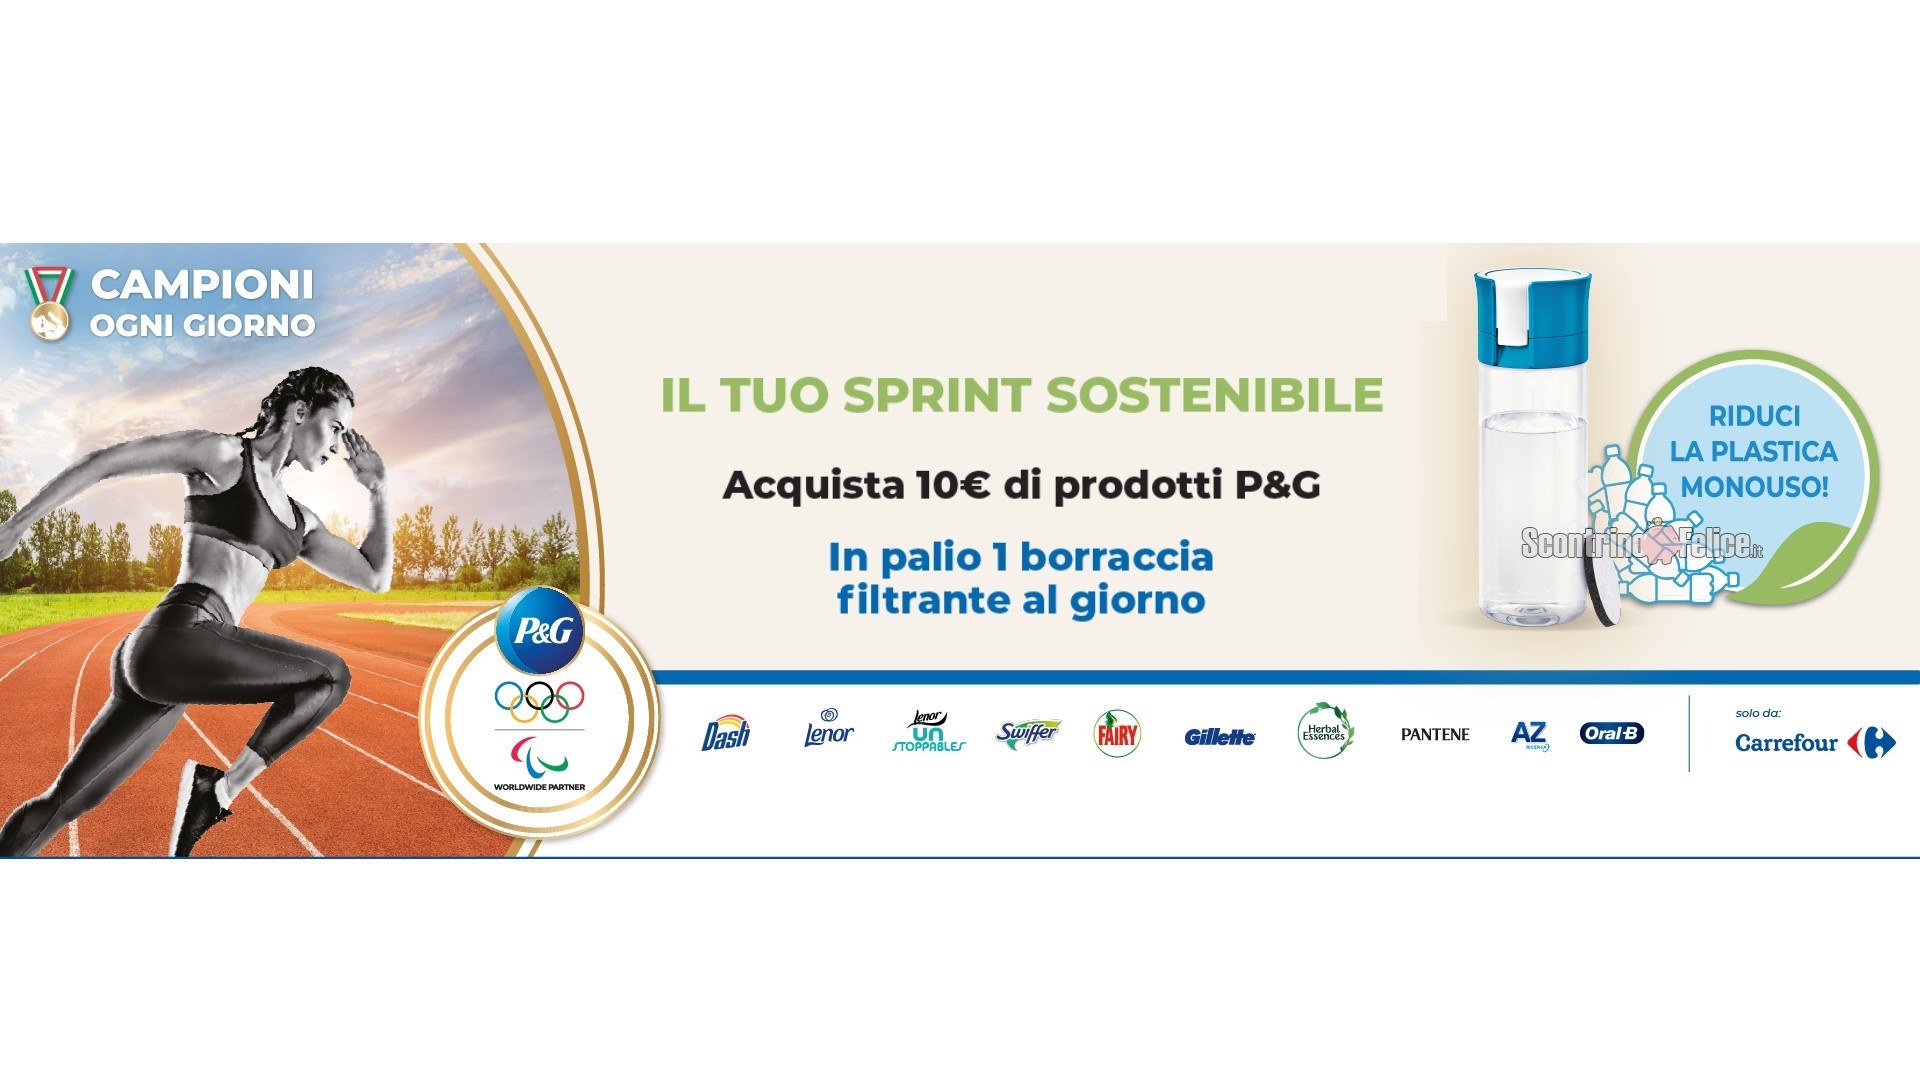 Concorso P&G "Il tuo sprint sostenibile" da Carrefour: in palio 1 Borraccia filtrante Brita al giorno